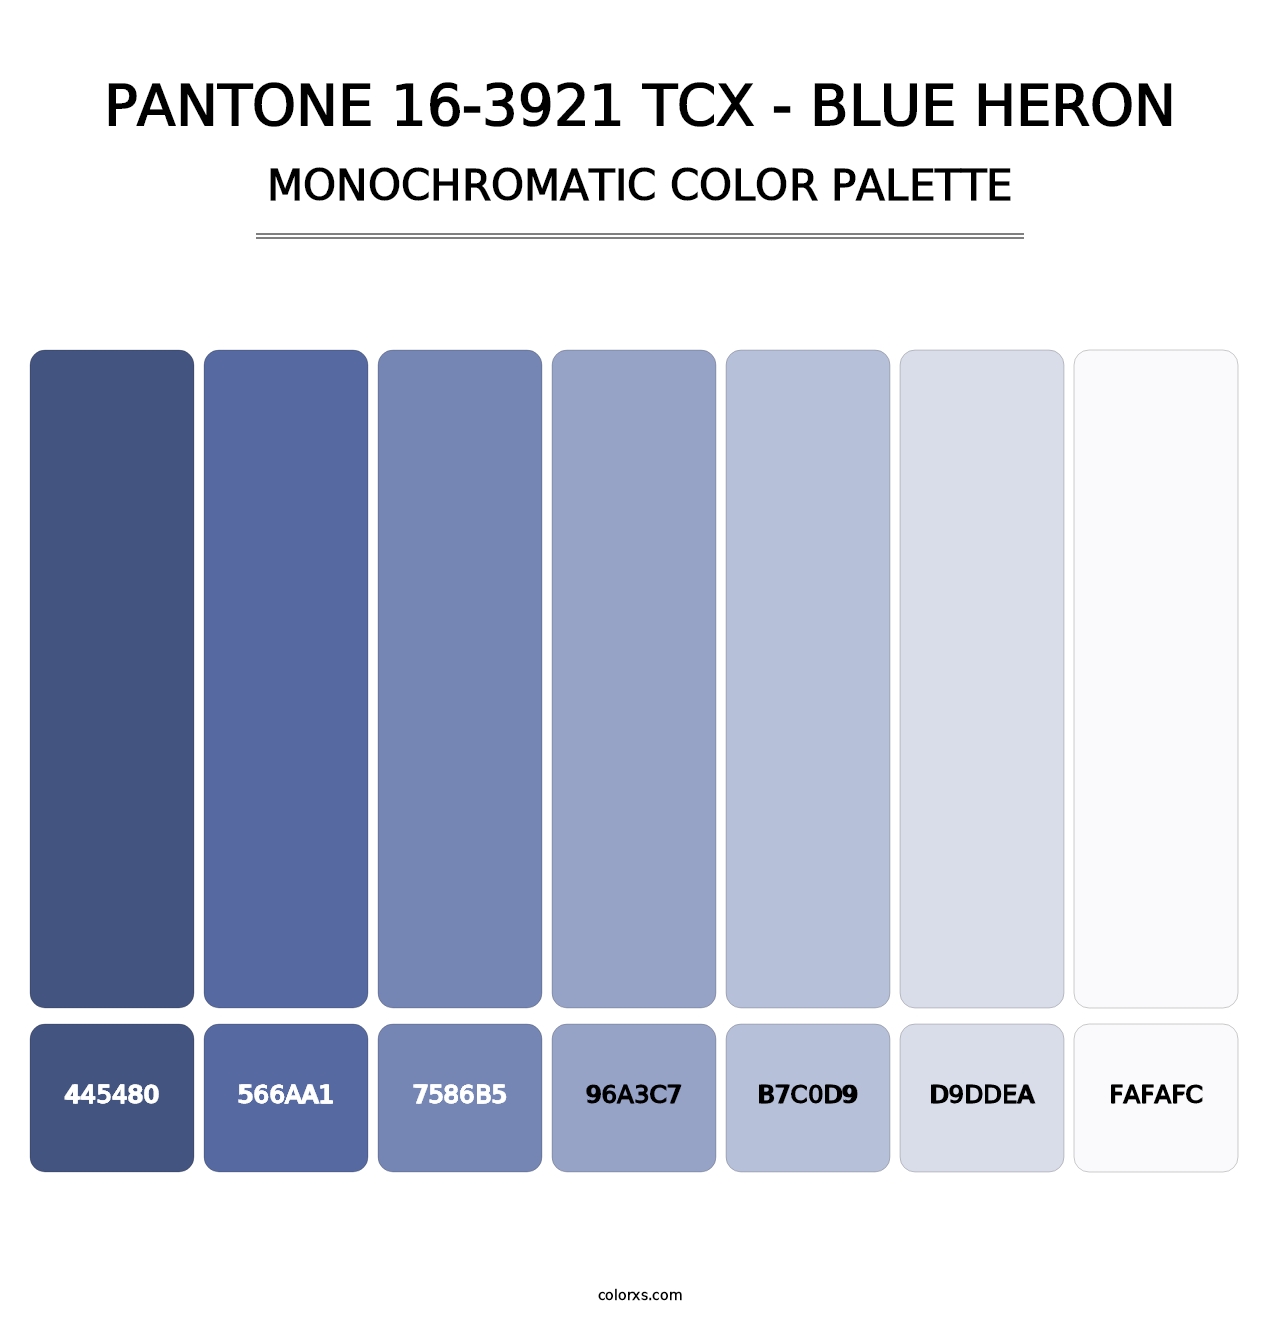 PANTONE 16-3921 TCX - Blue Heron - Monochromatic Color Palette